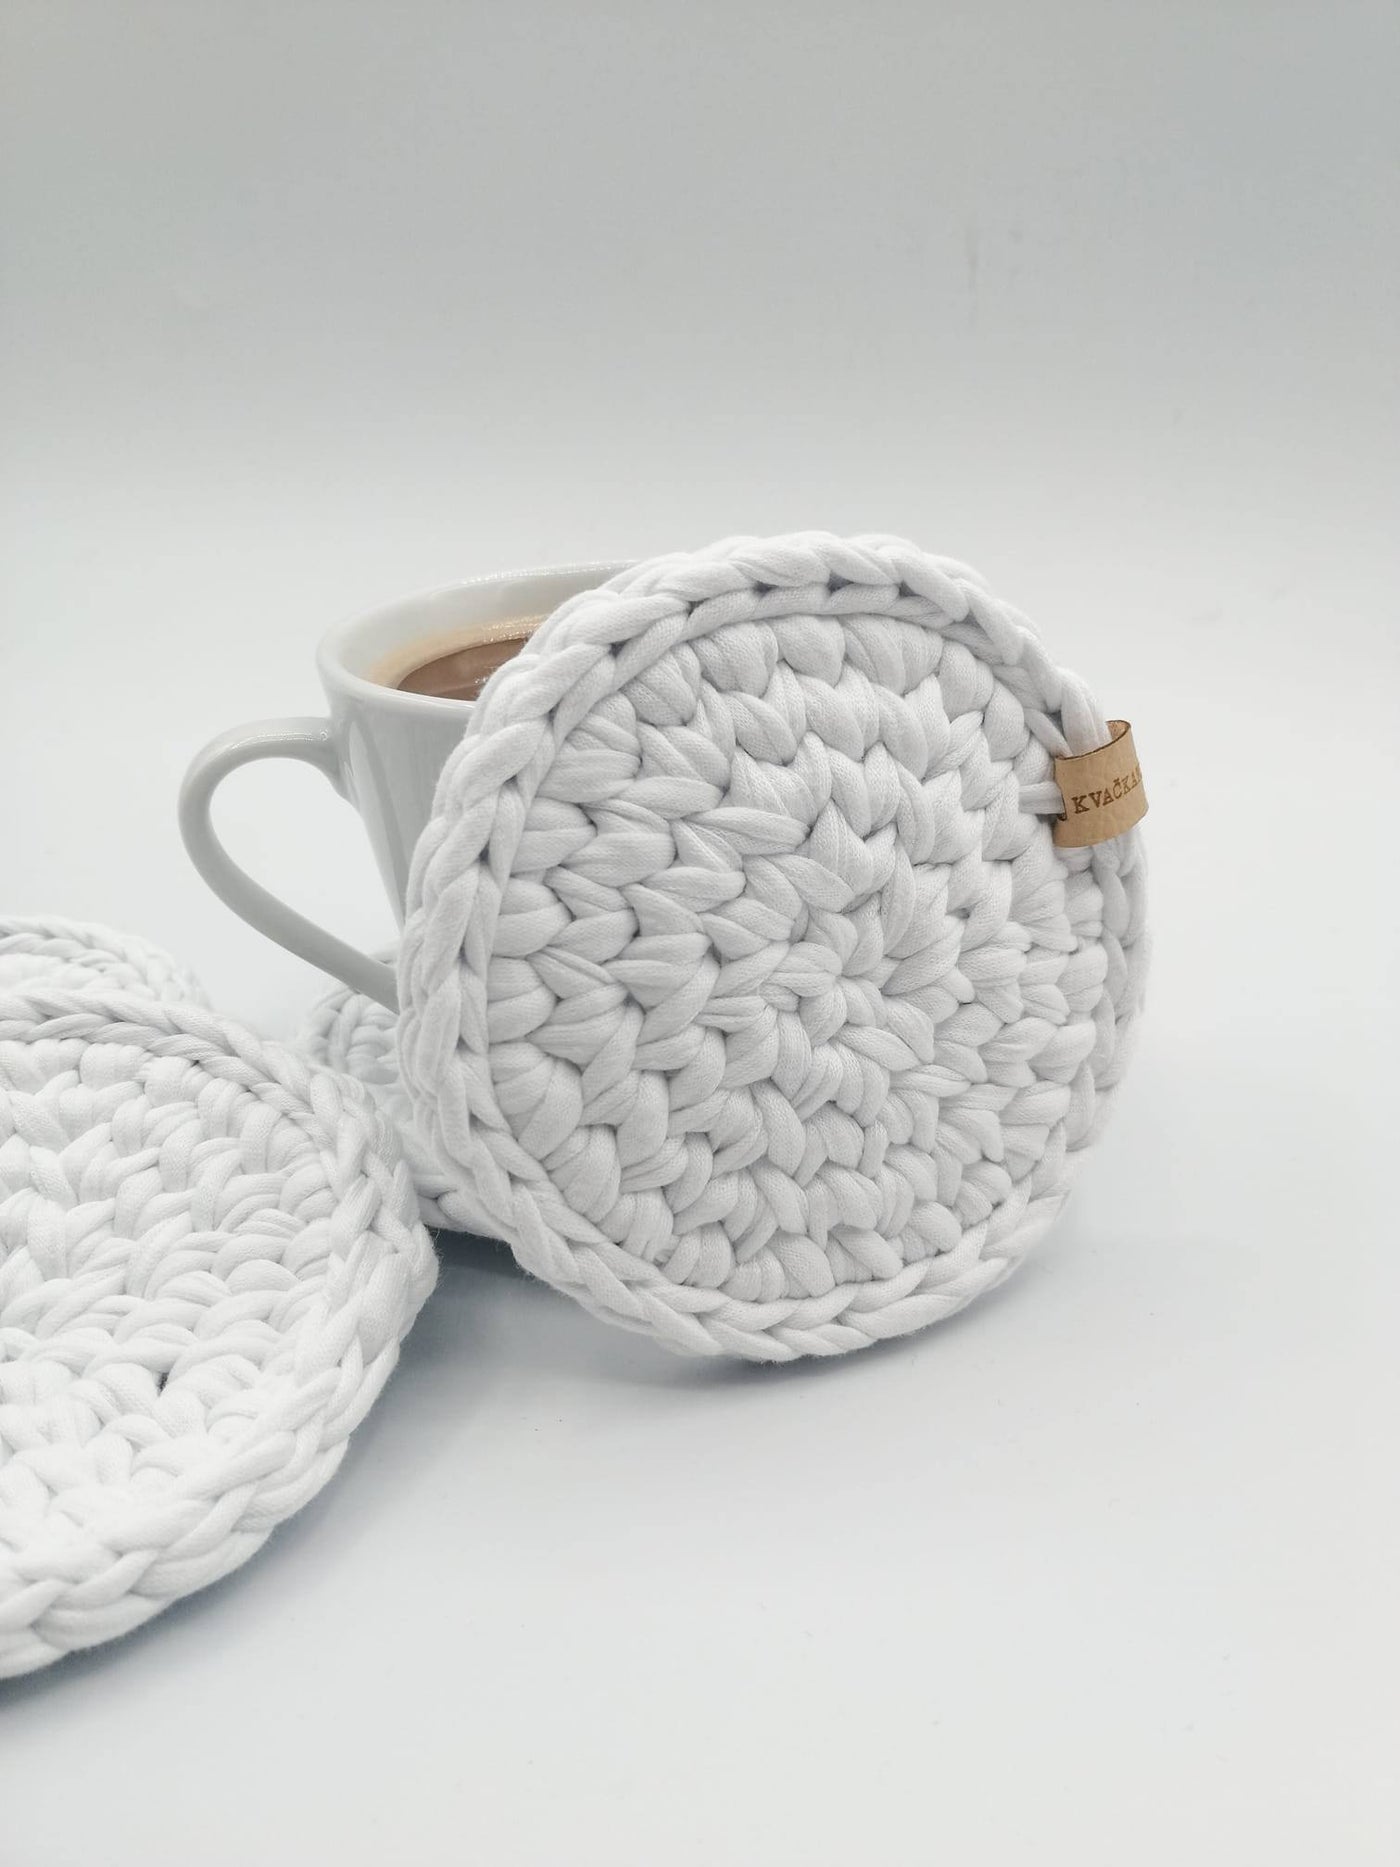 Crochet Coasters - Ultimate Base